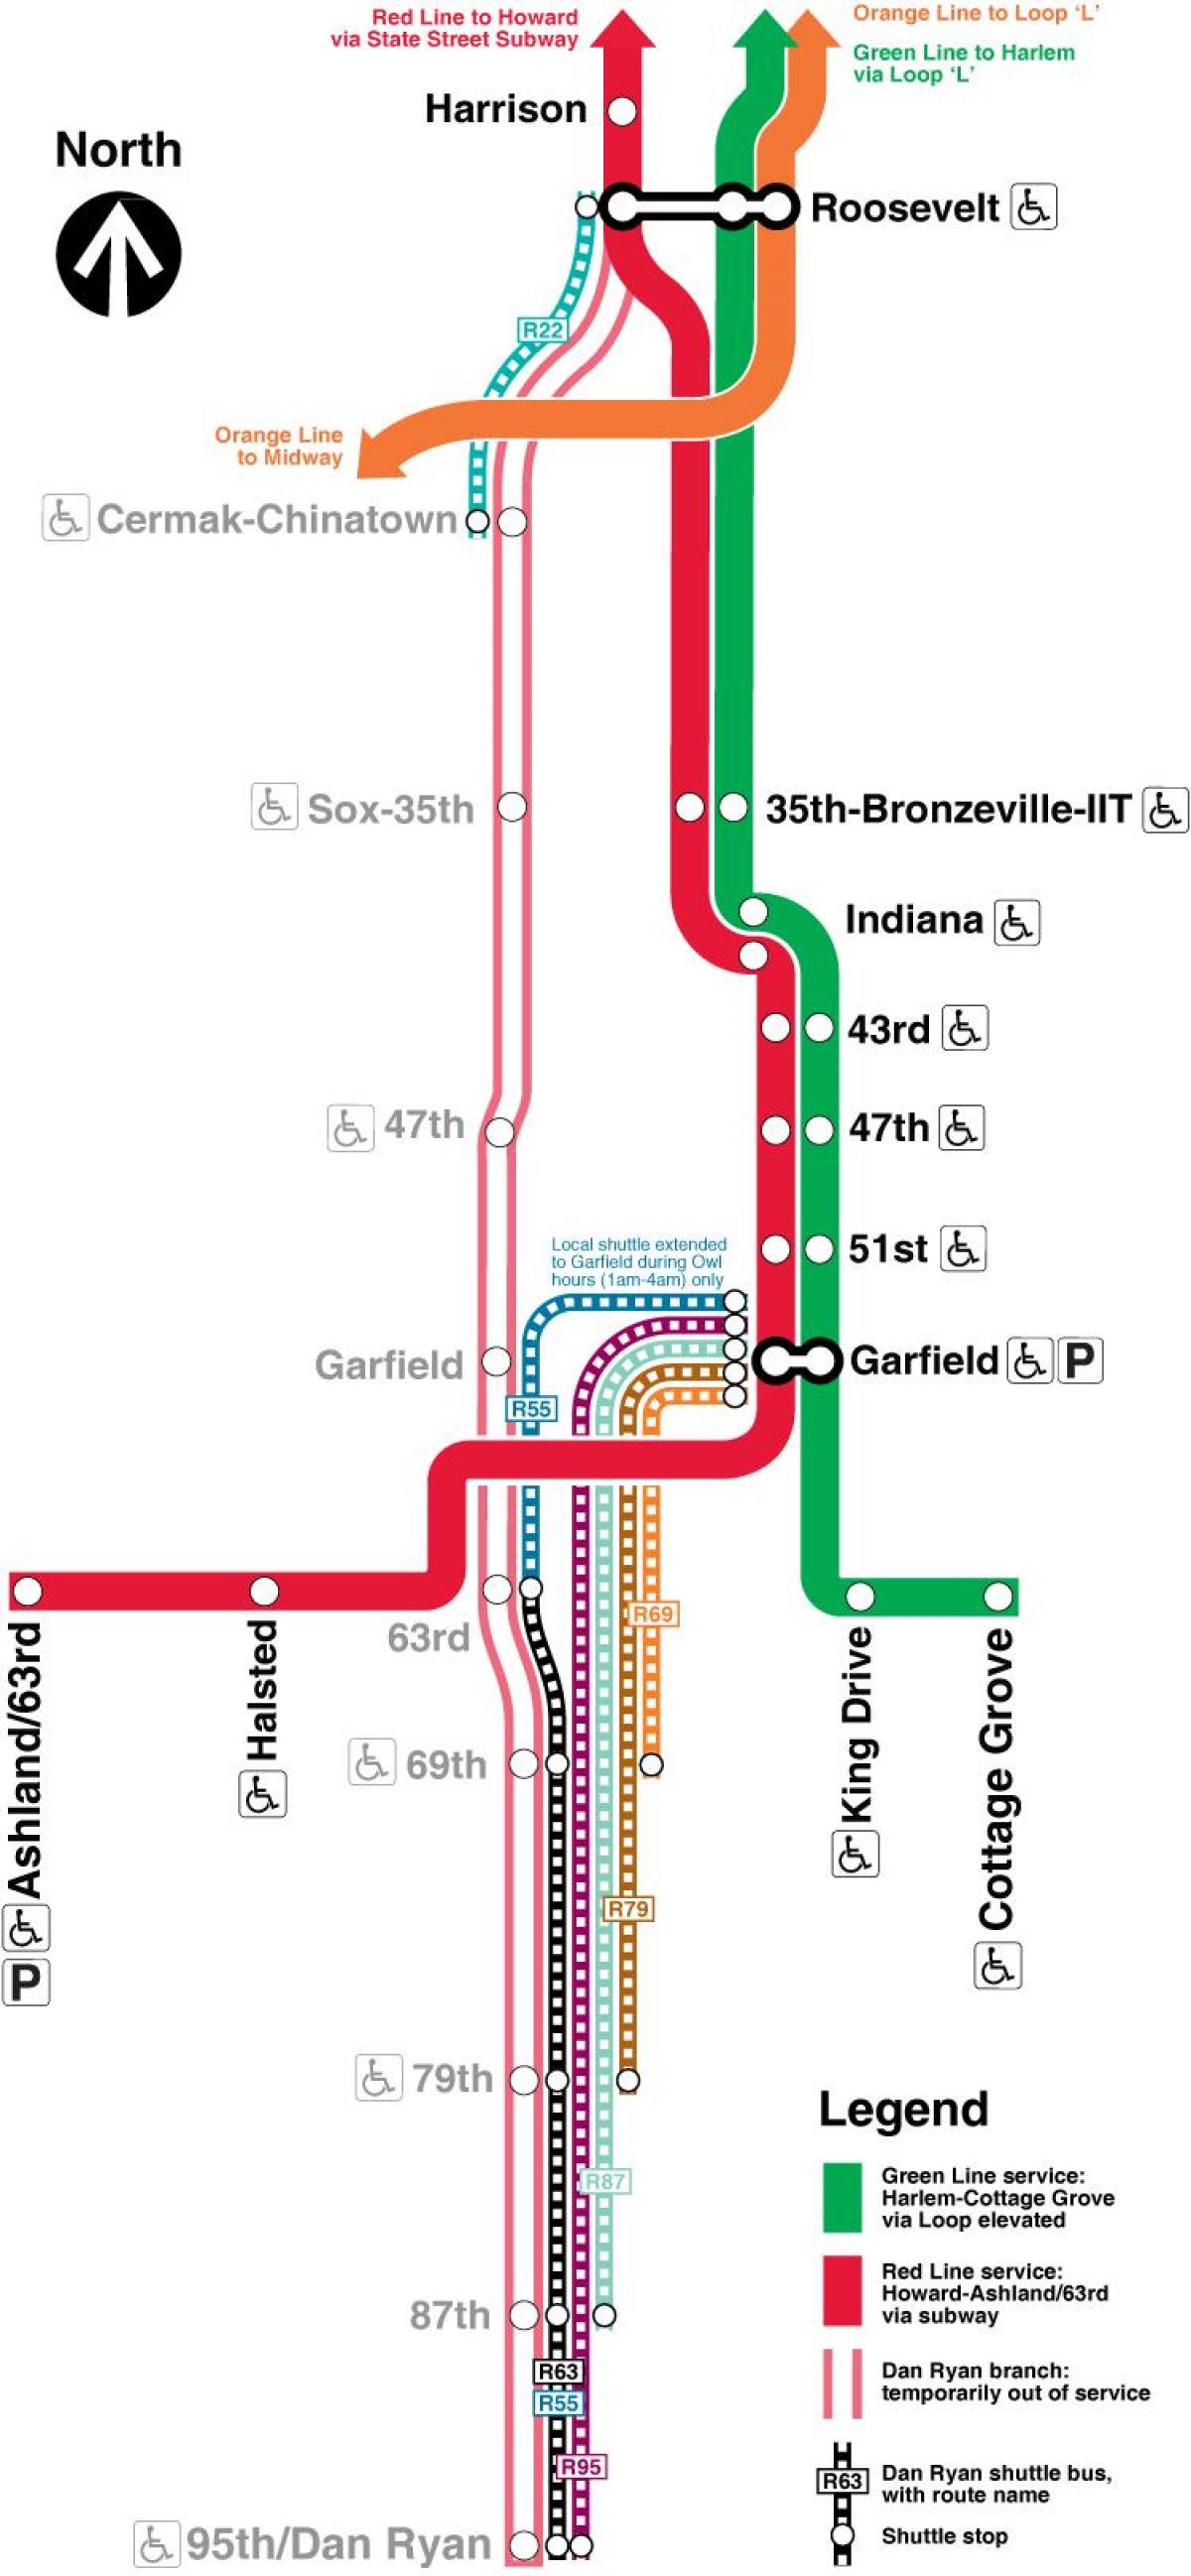 Chicago cta de la línea roja del mapa